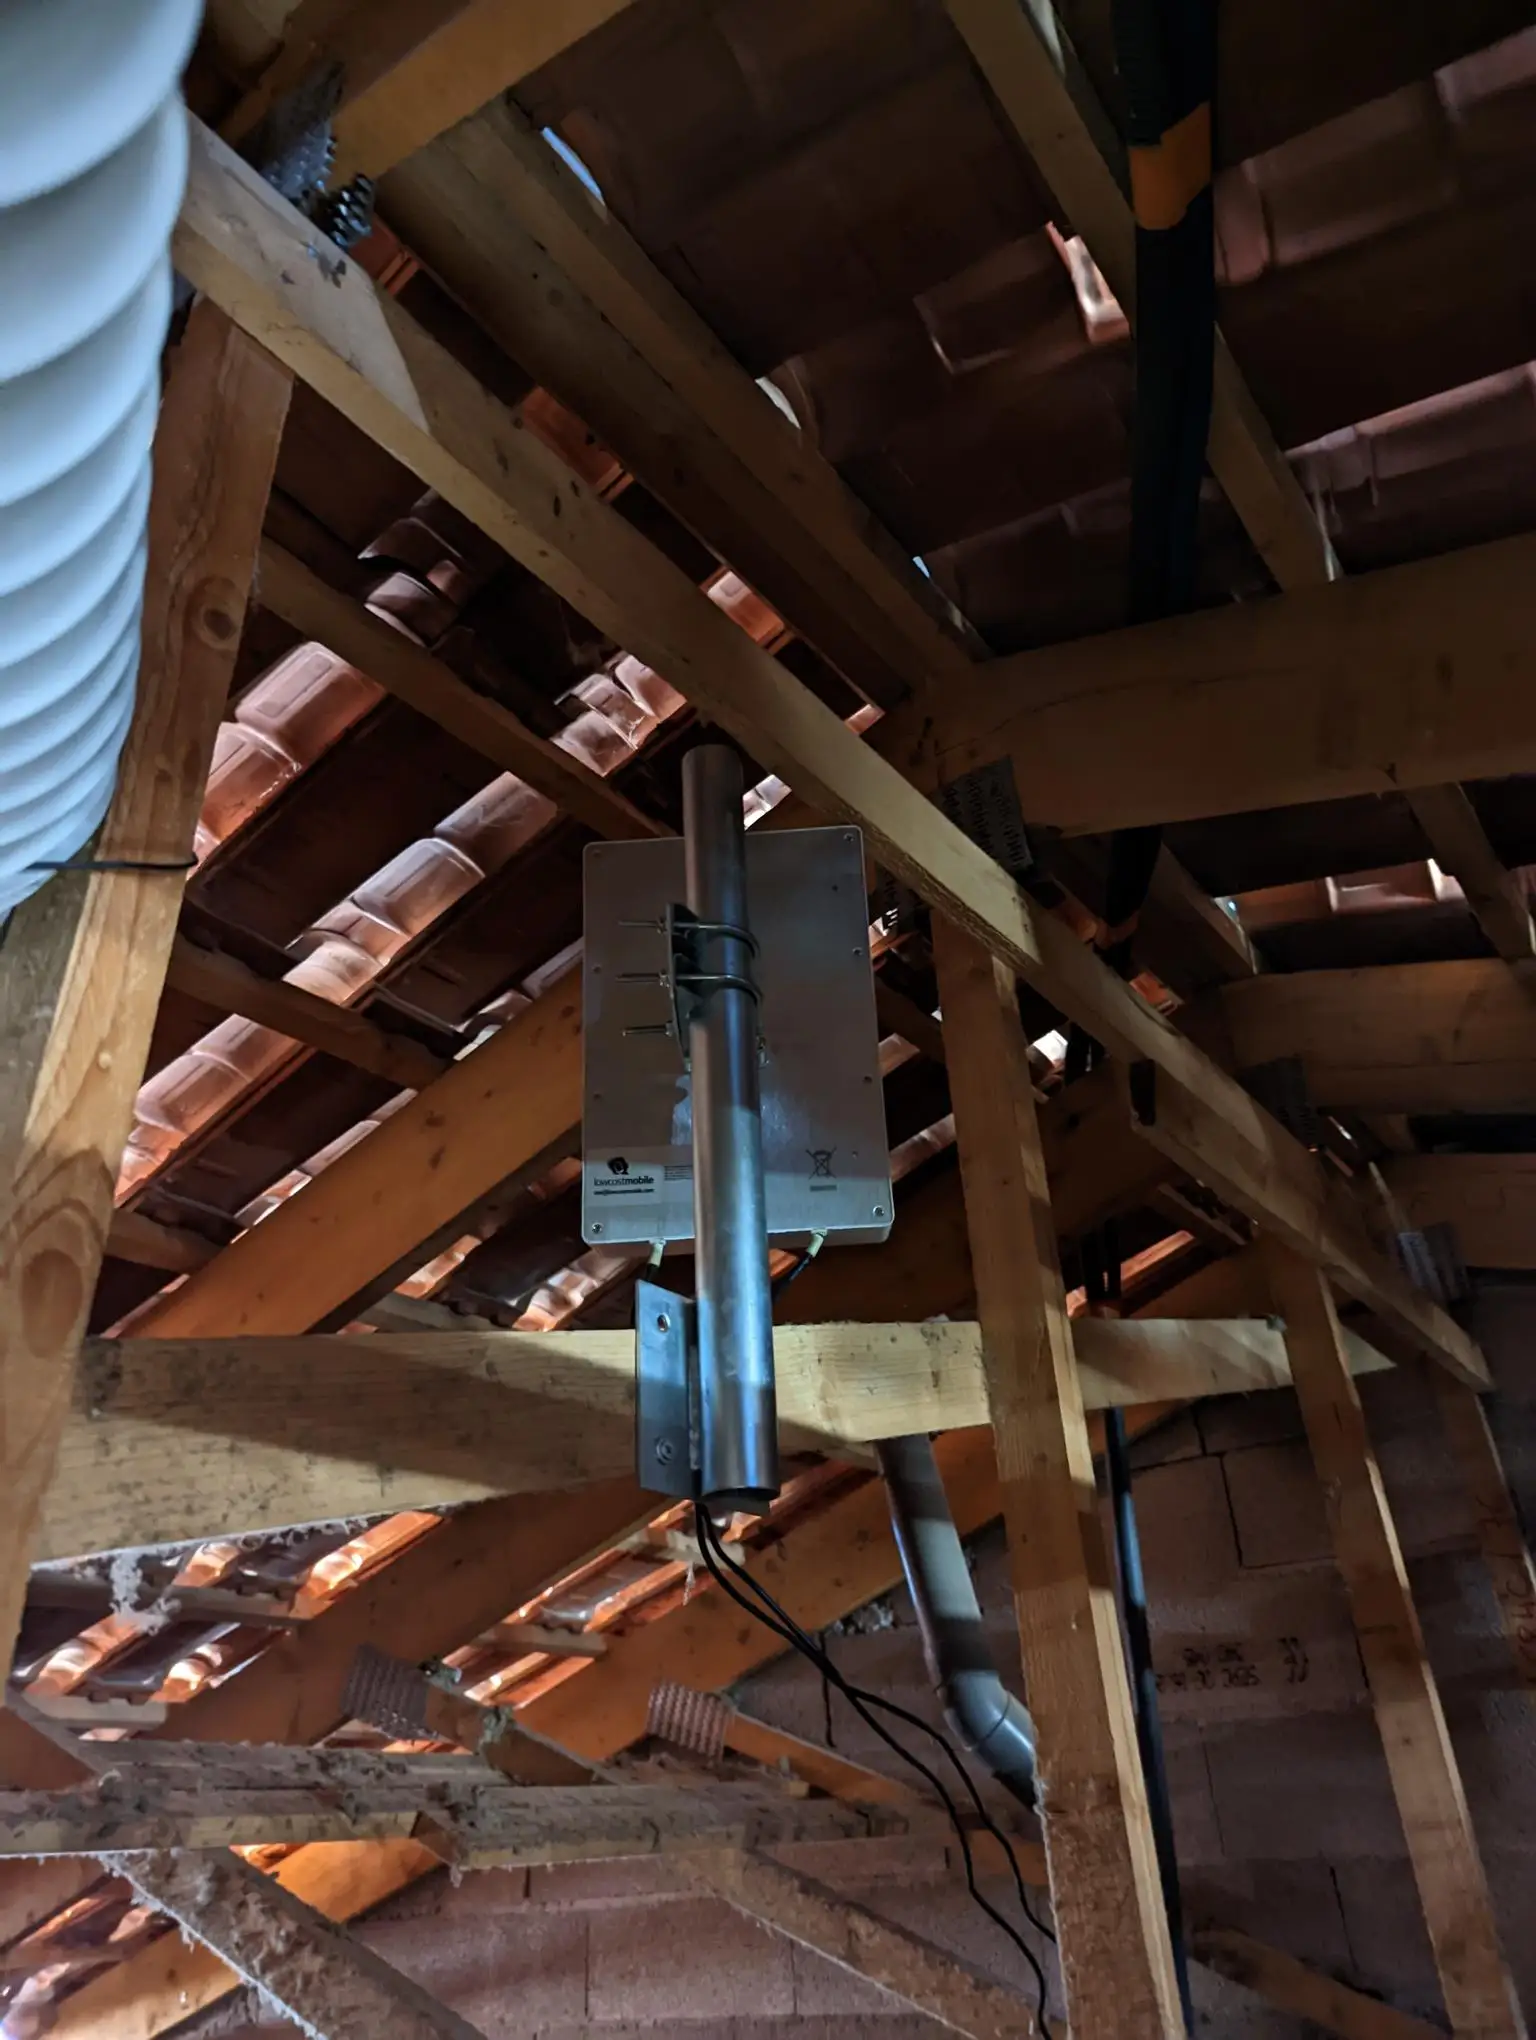 Antenna in the attic